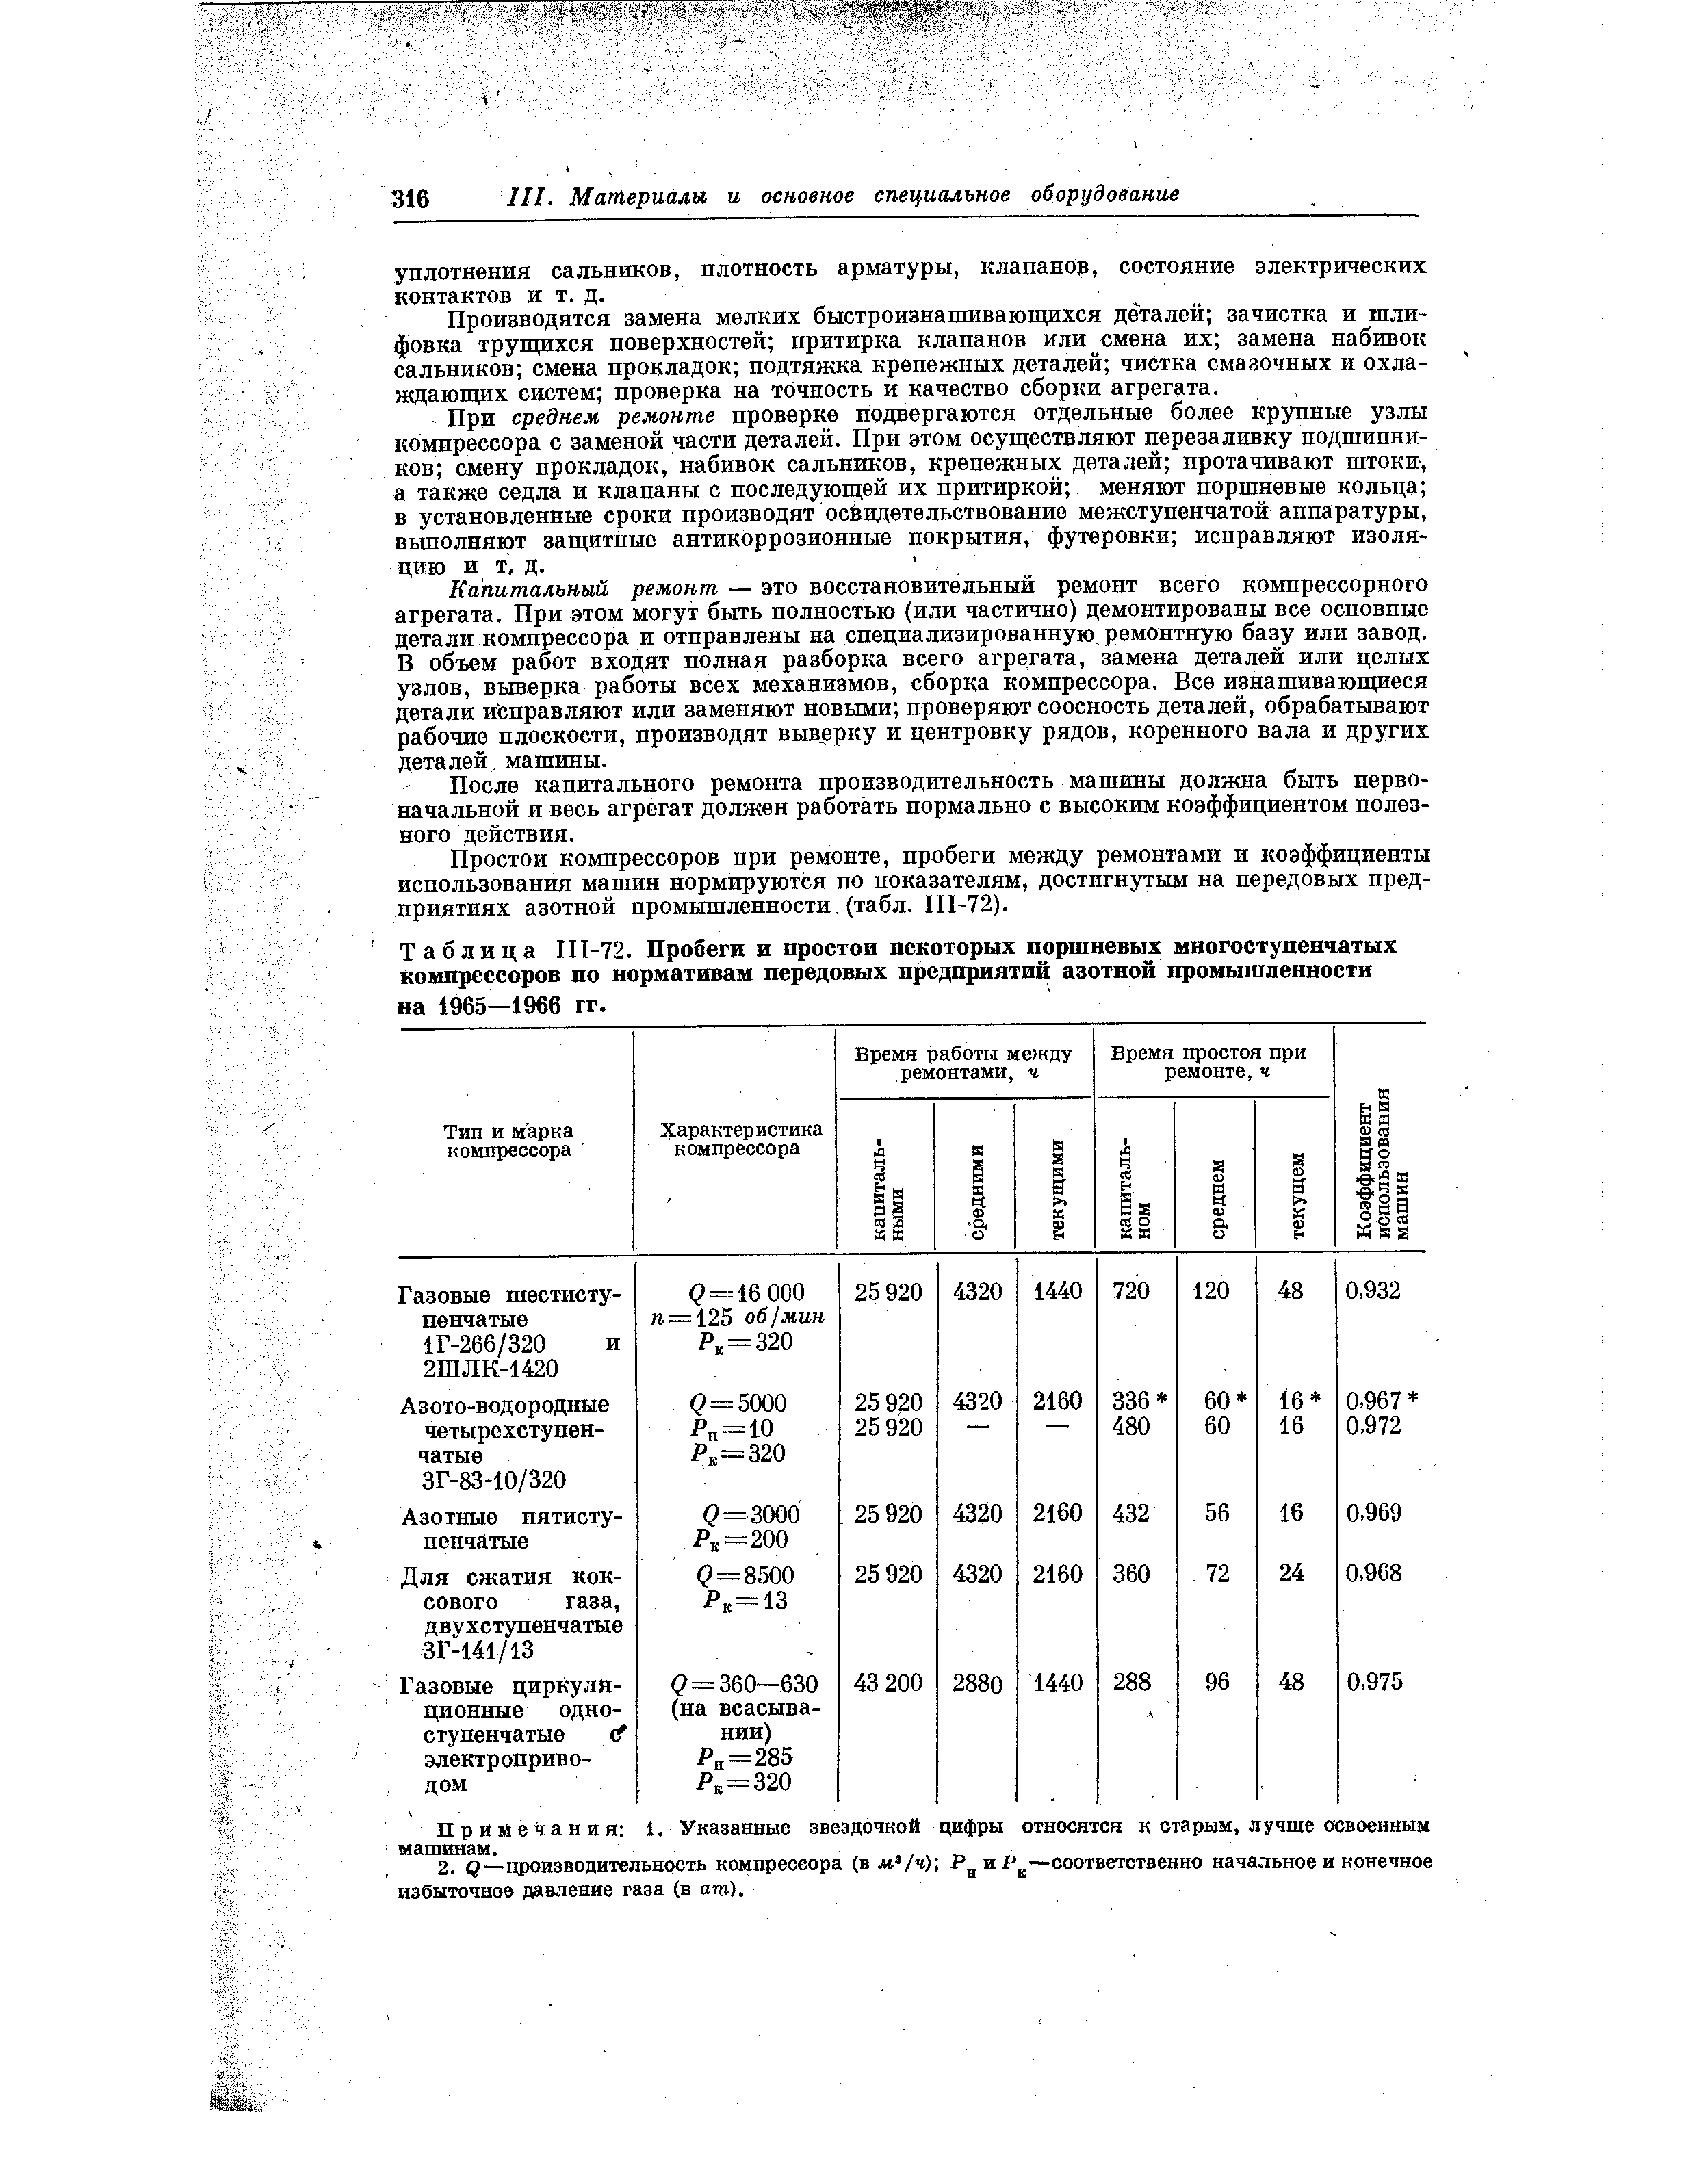 Таблица 111-72. Пробеги и простои некоторых поршневых мвогоступетатых компрессоров по нормативам передовых предприятий азотной промышленности на 1965—1966 гг.
